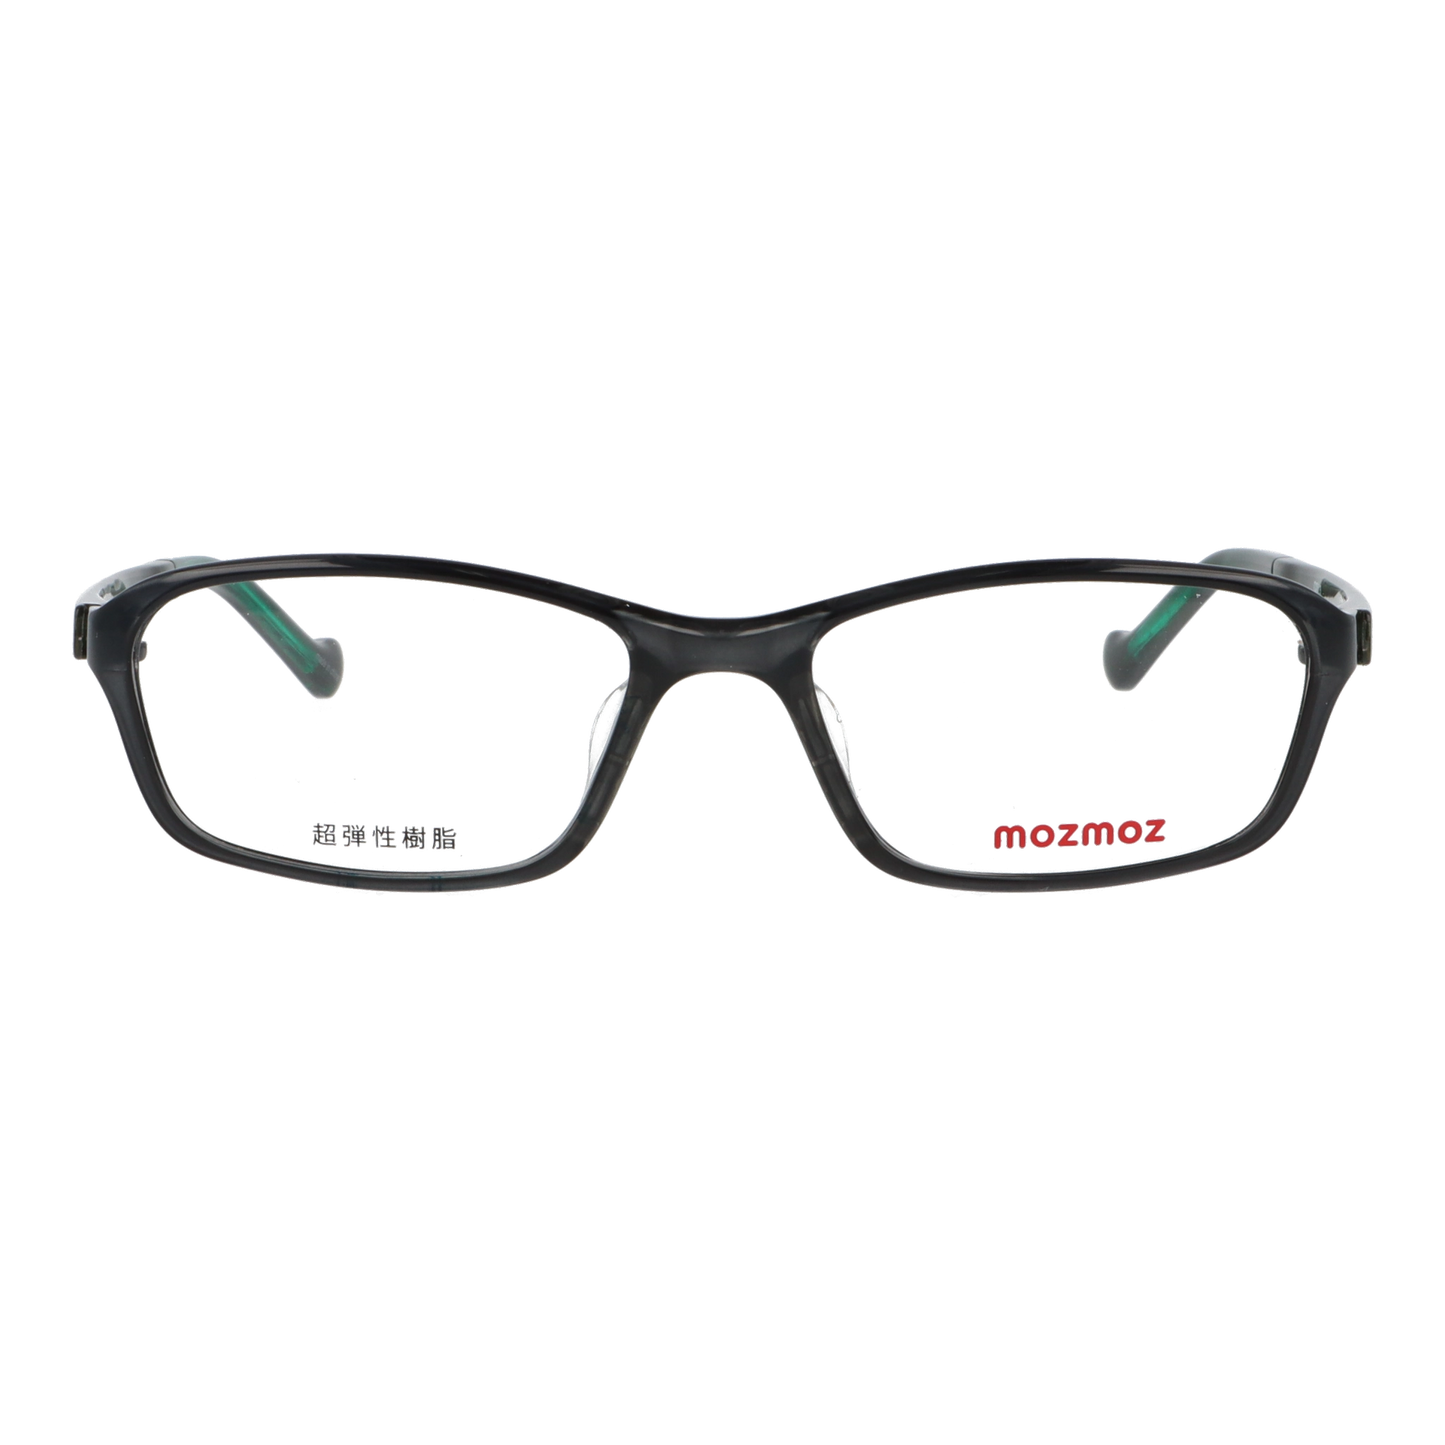 正面から見たアイウェア【軽量】こどもメガネ mo3003のカラーグレー/グリーン